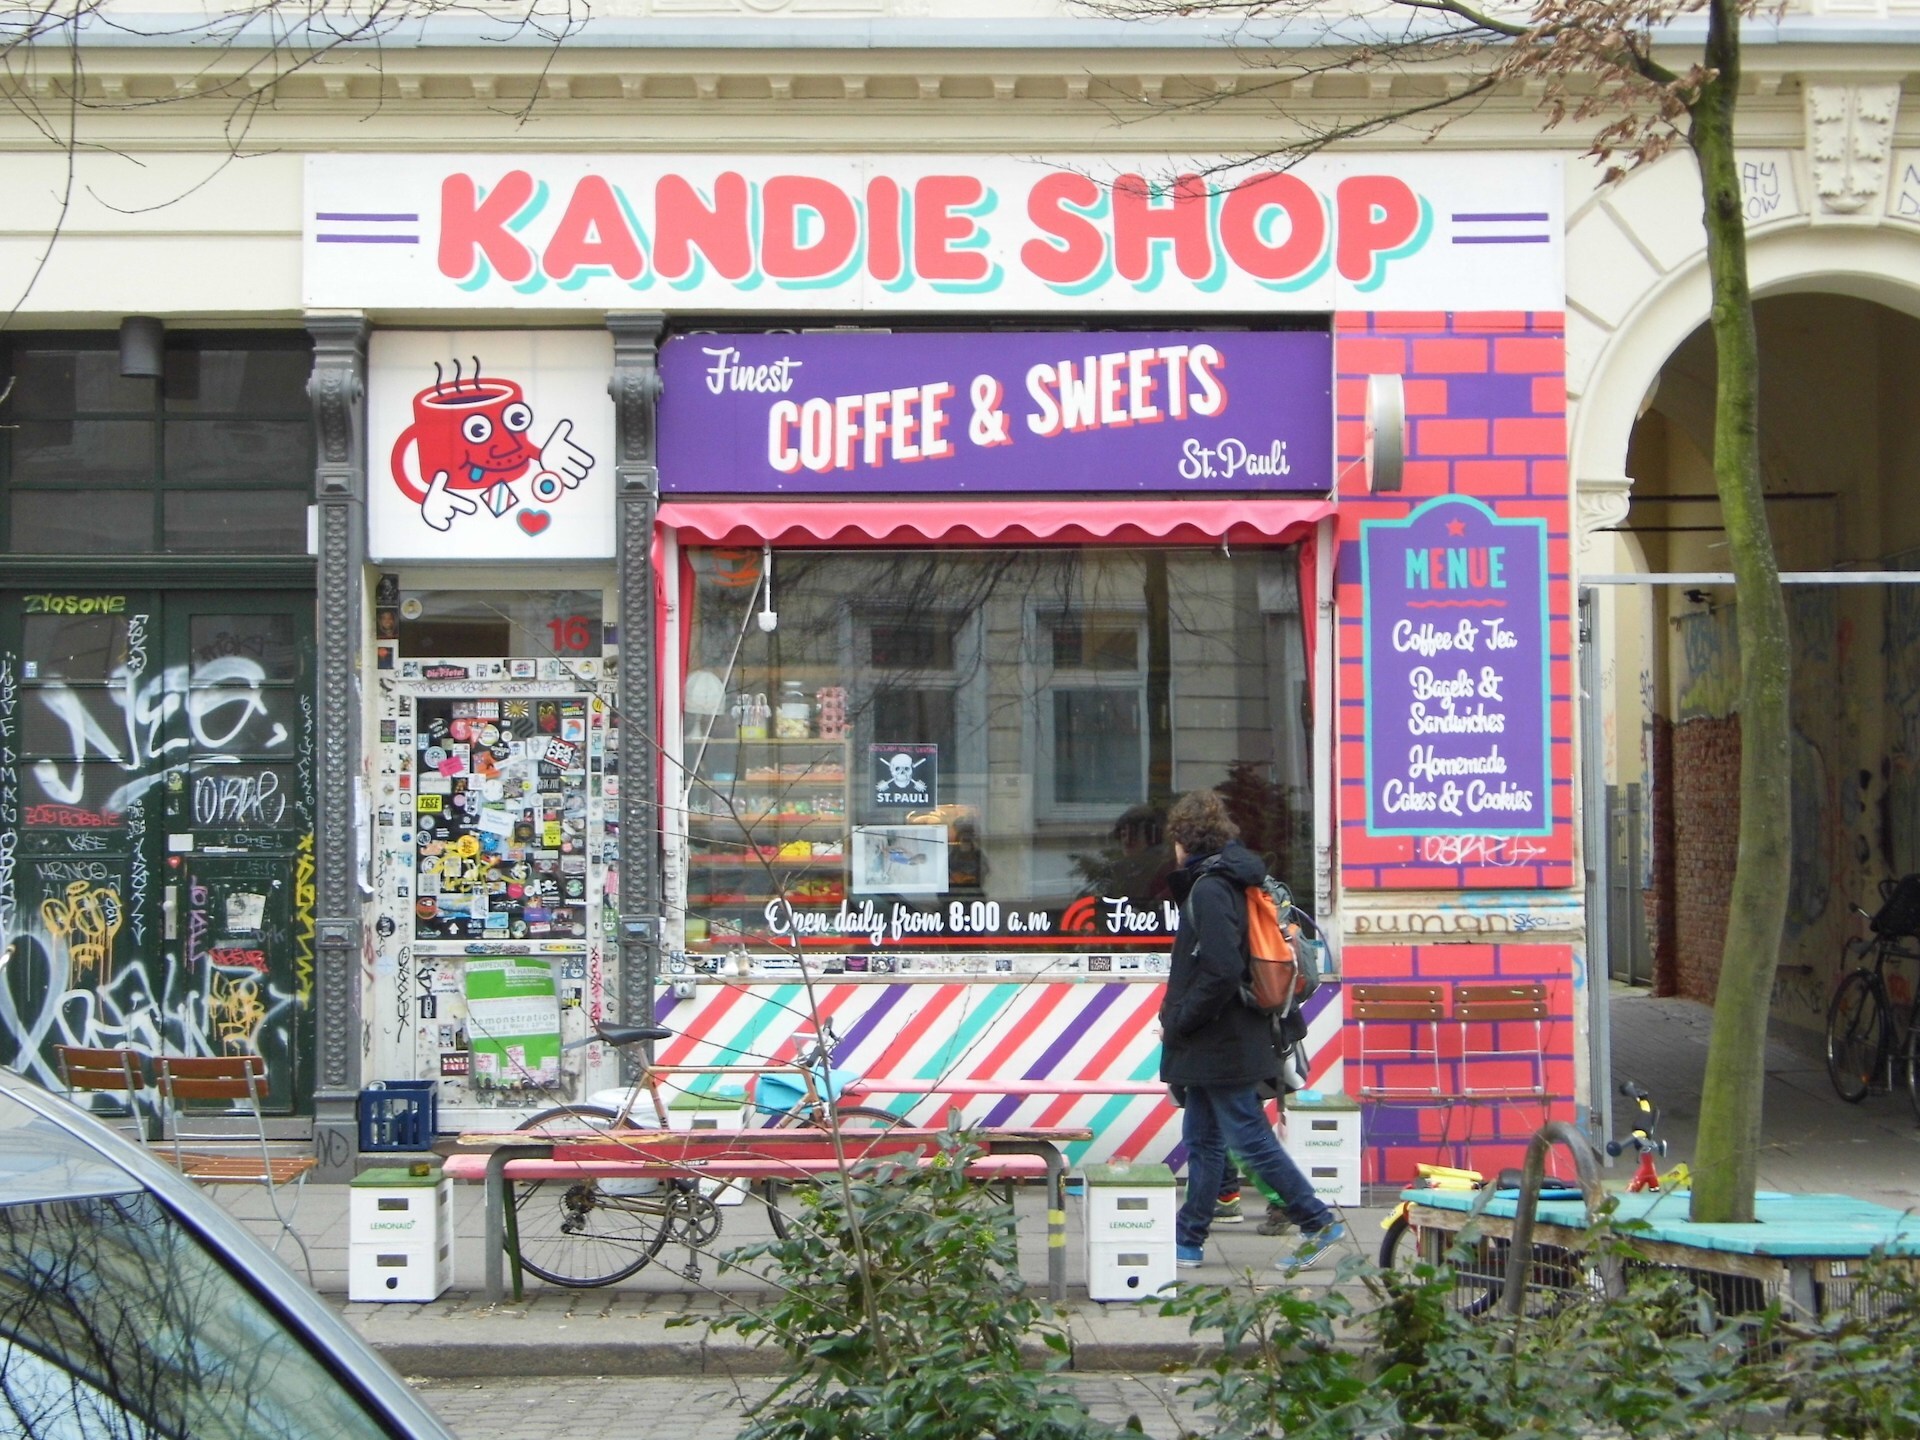 Kandi shop